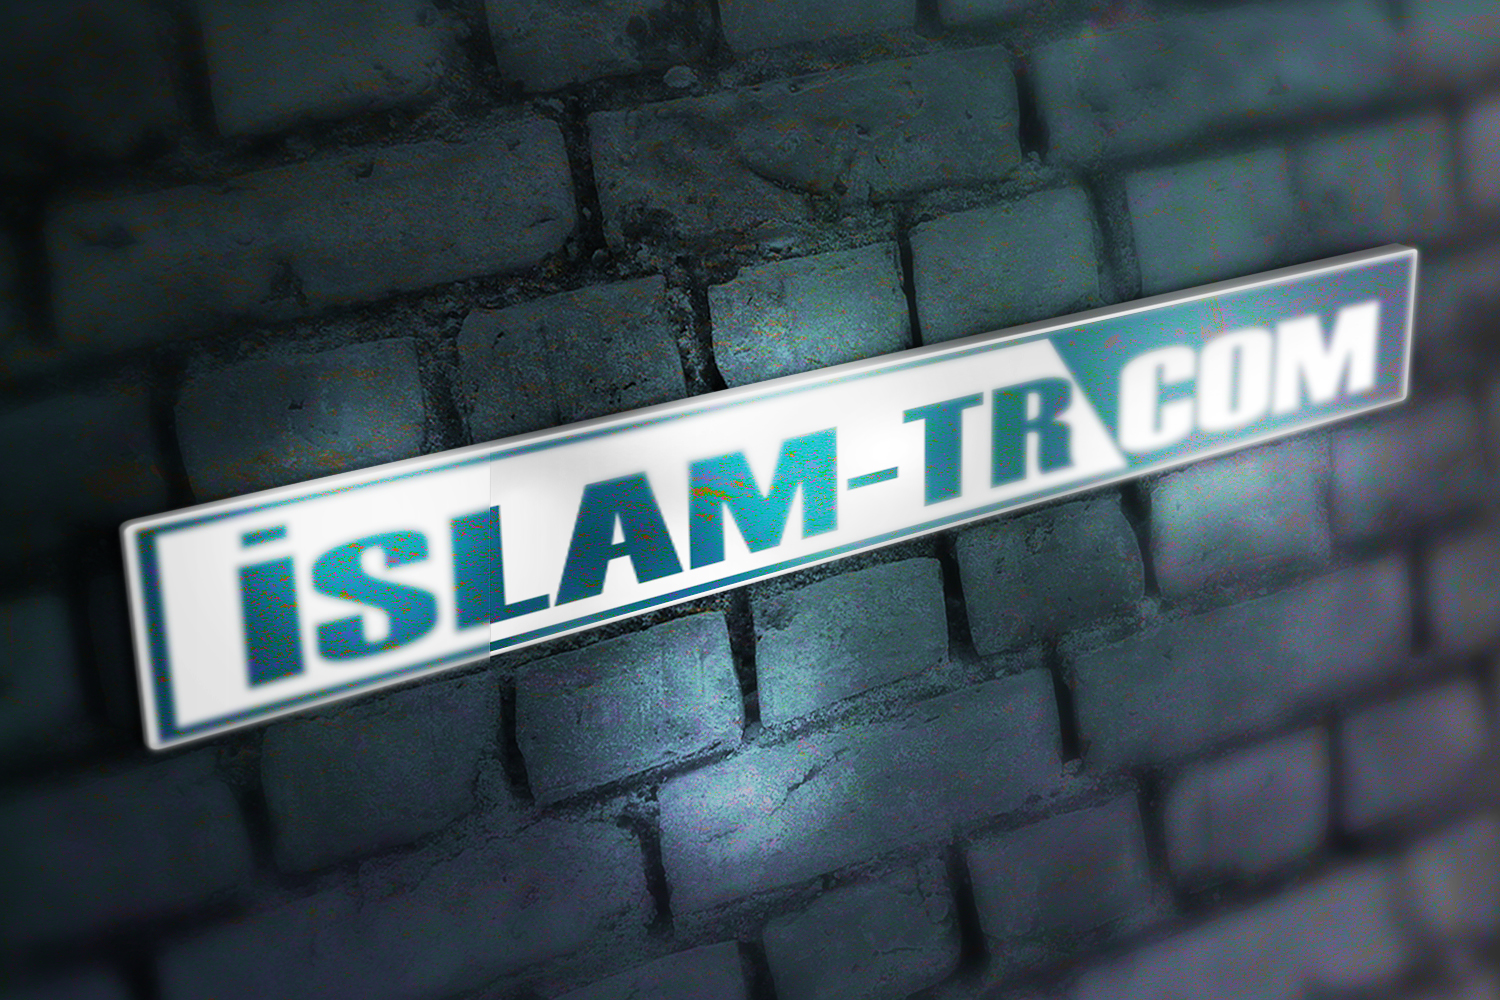 islam2.jpg